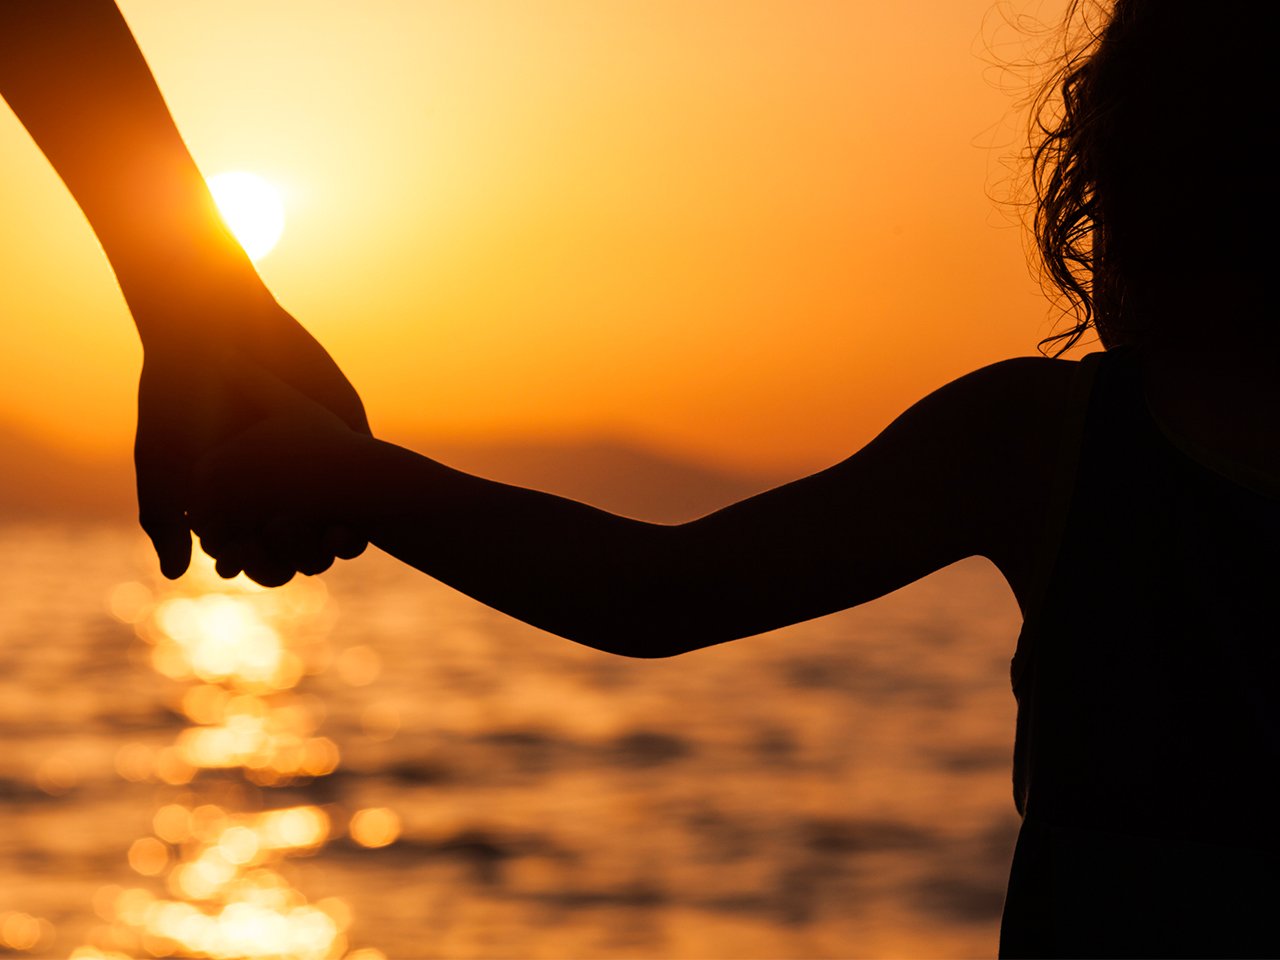 nainen ja taapero pitämässä toisiaan kädestä auringonlaskun aikaan